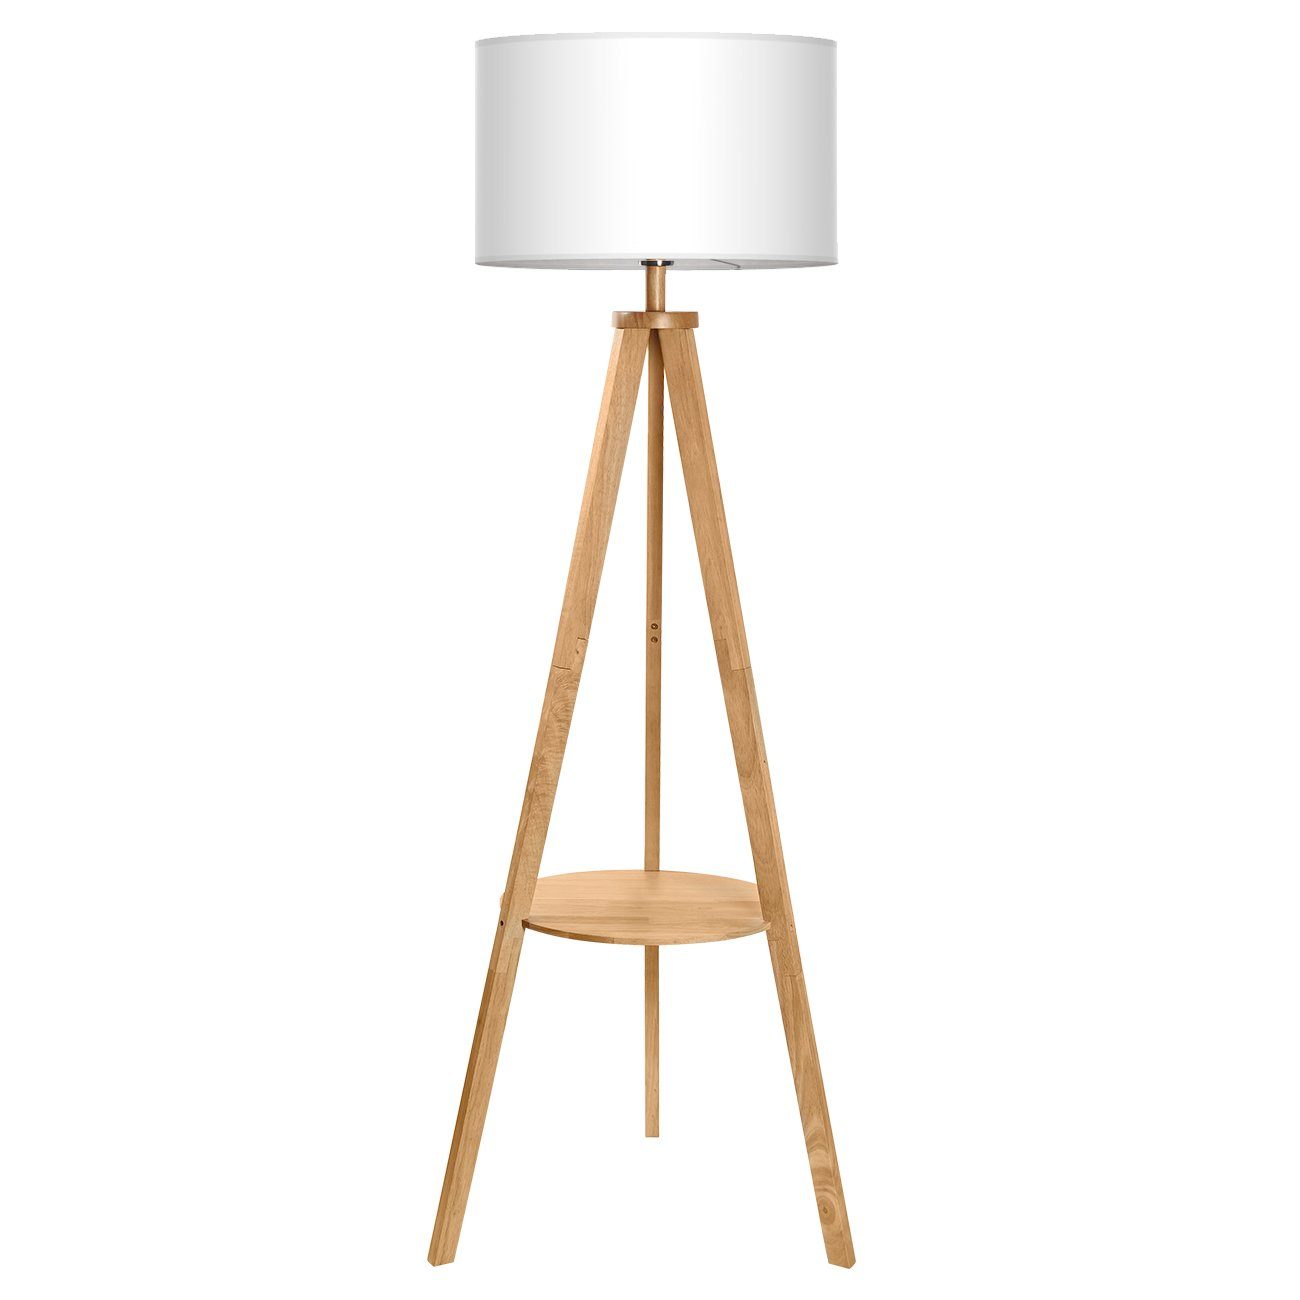 Tomons Stehlampe »Stativ aus Holz, Stehleuchte mit Ablage und E27 8W Glühbirne, Weißer Lampenschirm aus Stoff, Skandinavischer Stil, für Wohnzimmer,